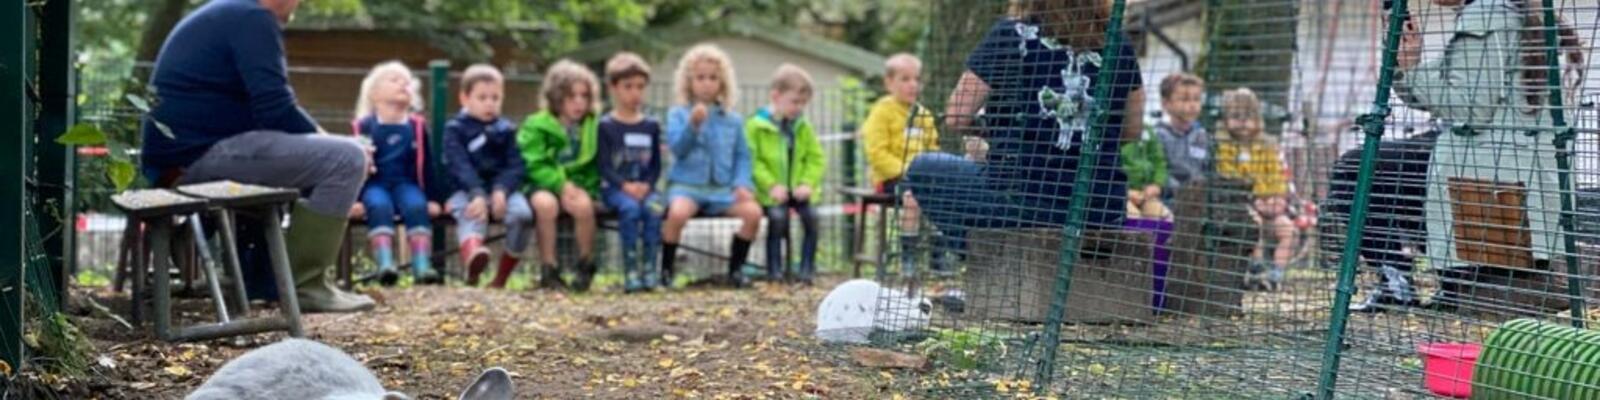 Op bezoek bij de konijnen van Schoolhoeve De Campagne